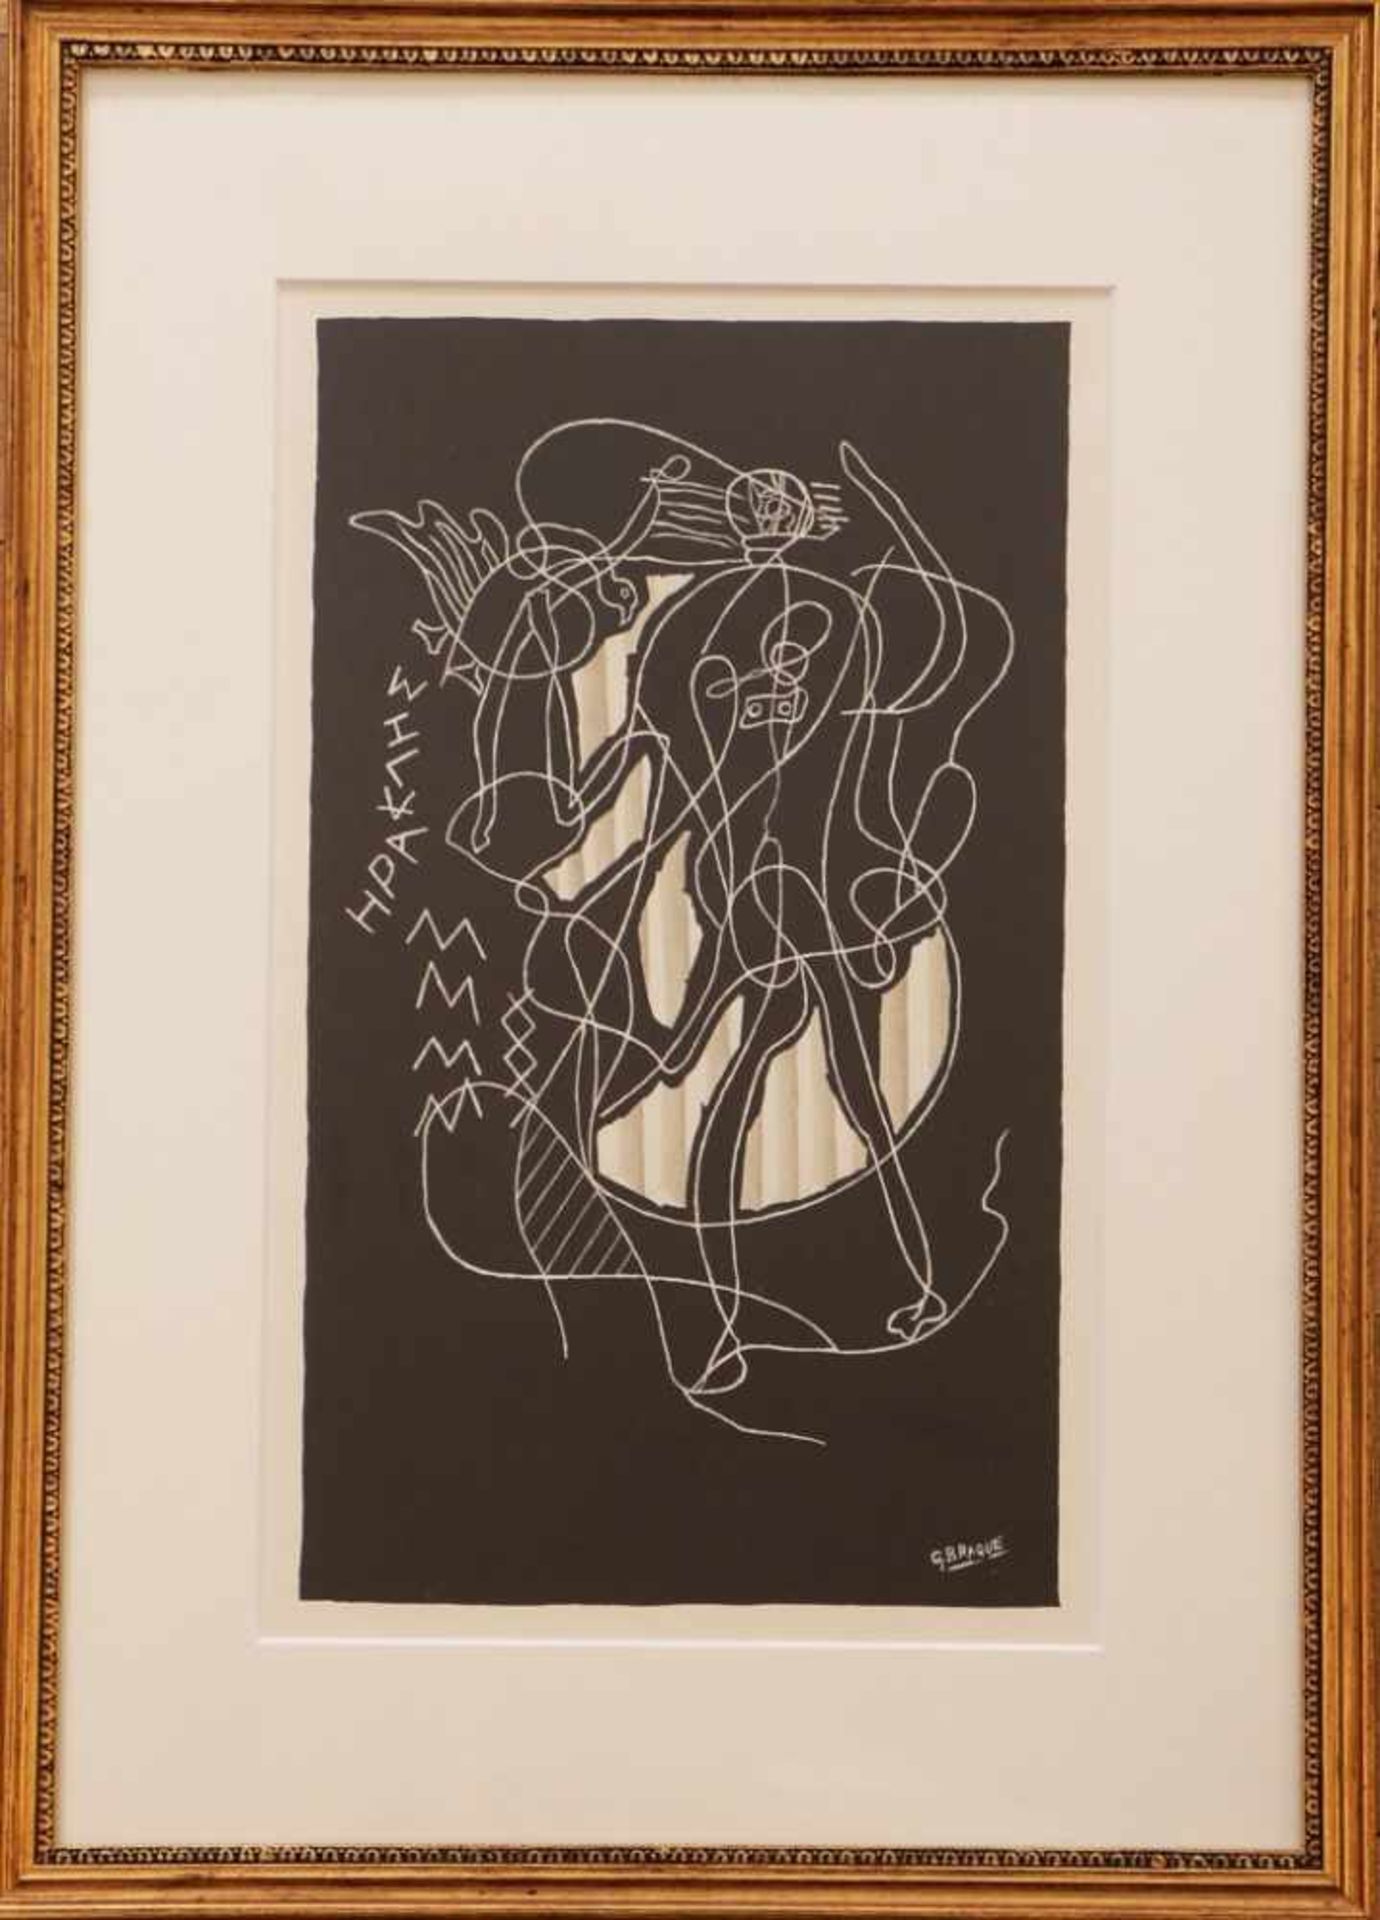 GEORGES BRAQUE (1882 Argenteuil-1963 Paris) Lithographie, ¨Herkules¨, unten rechts